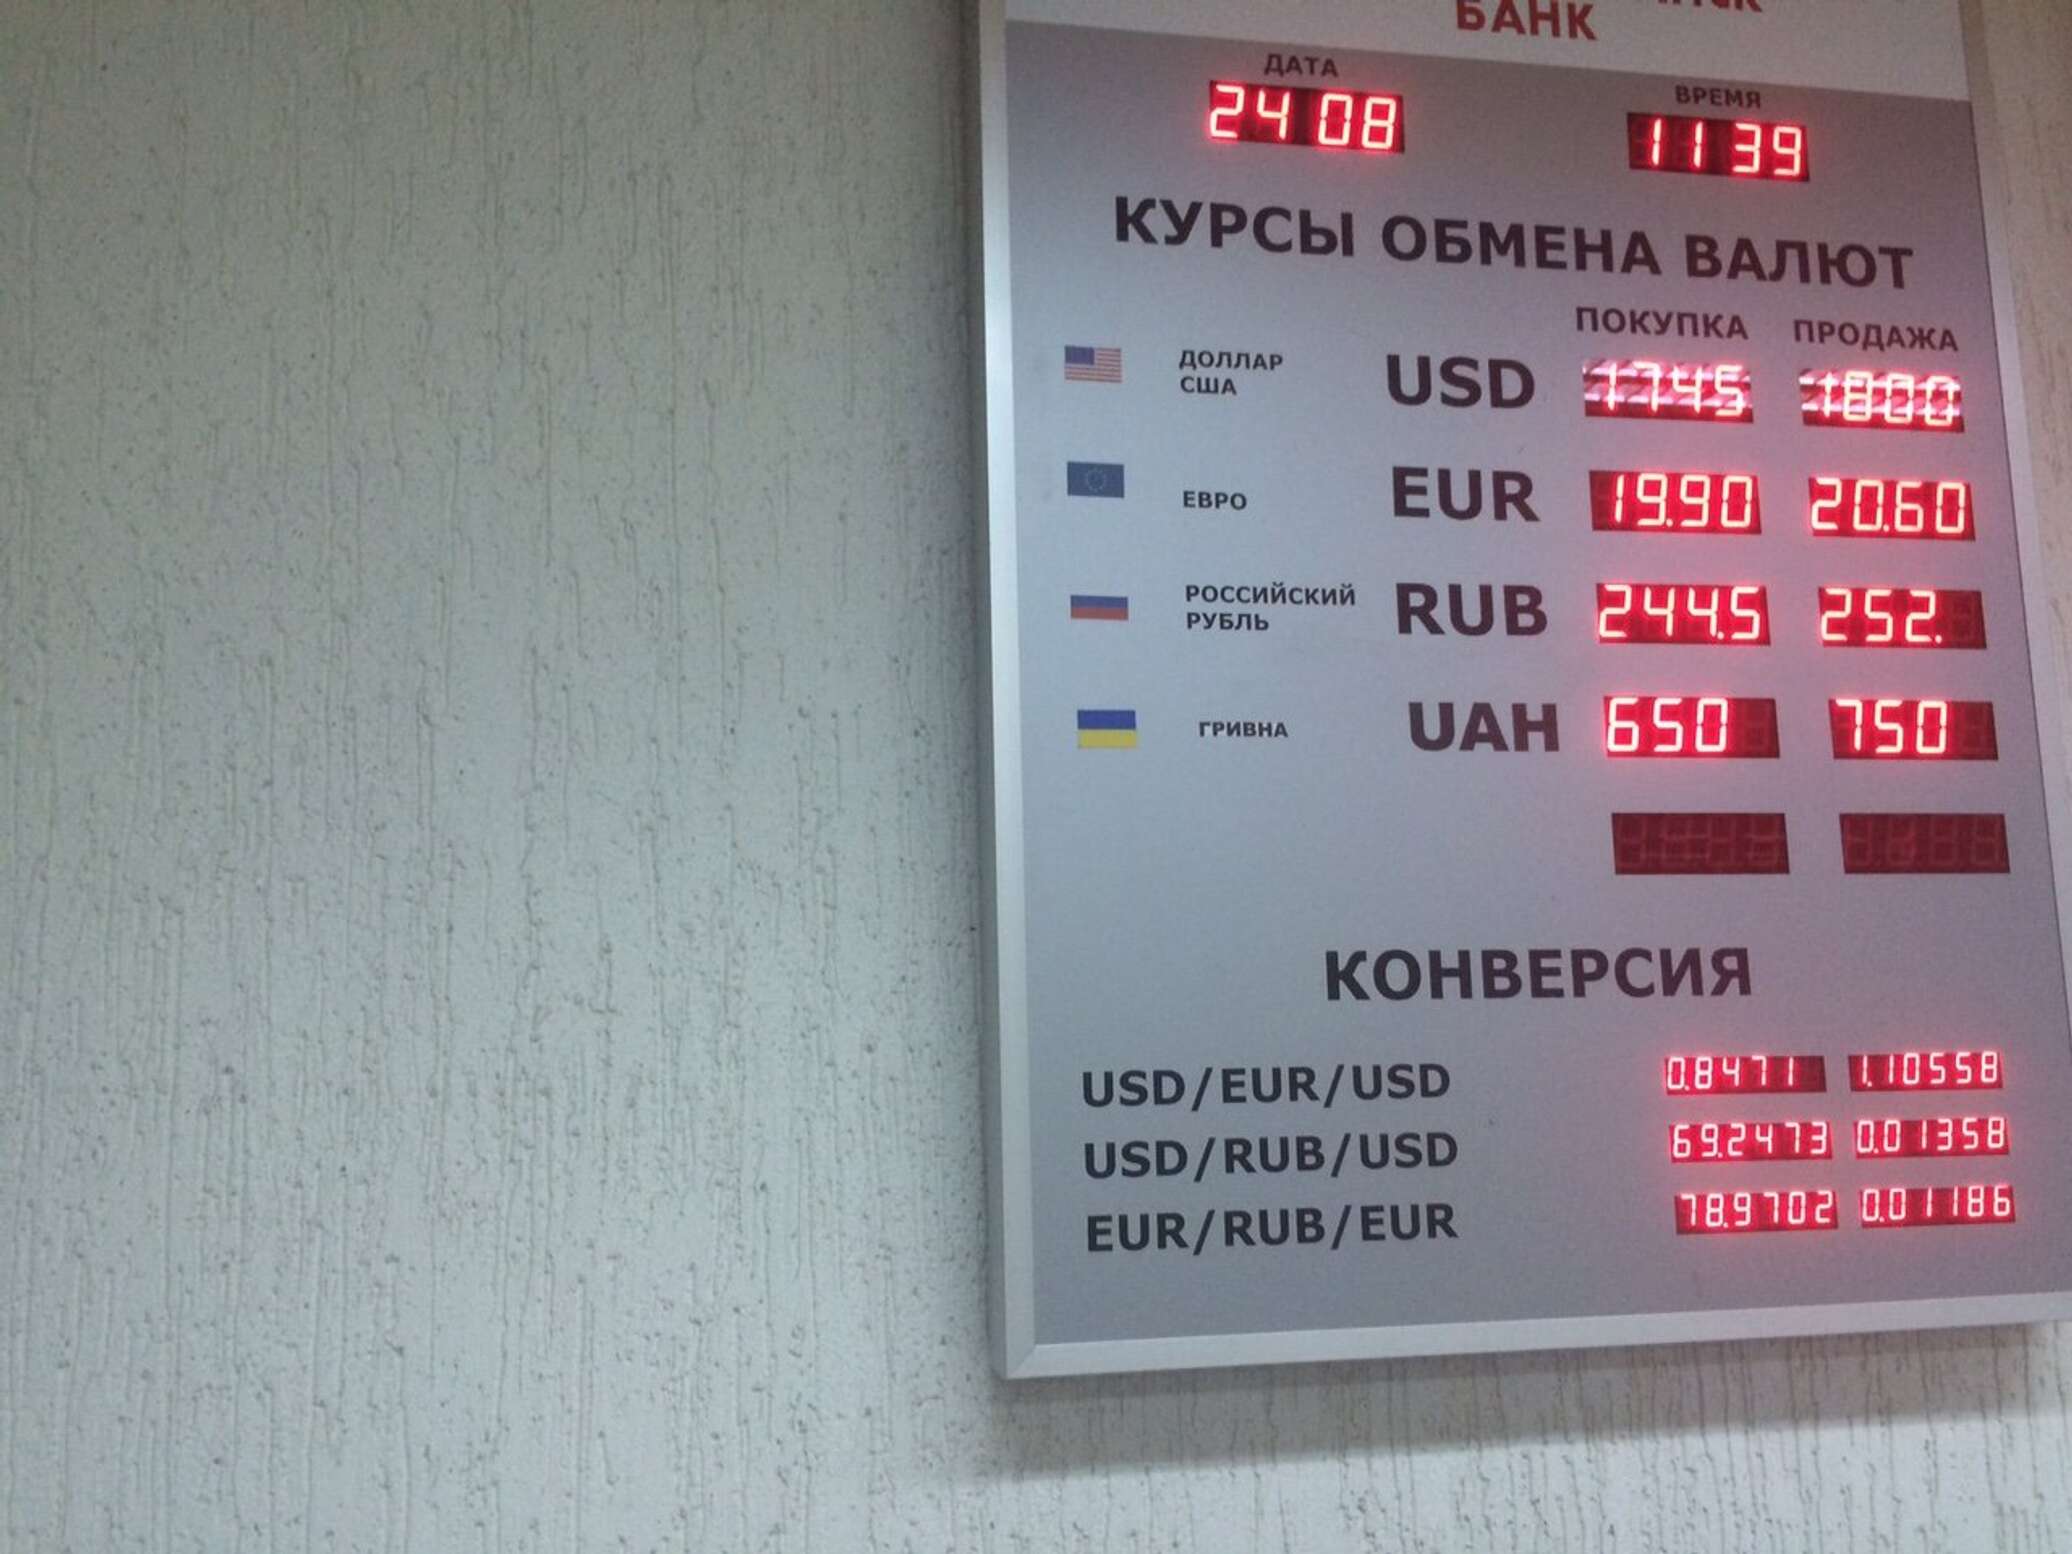 Курс белорусского рубля в банке минска. Купля продажа валюты. Курсы валют в рублях. Курс валют Нацбанка. Курсы валюты Нацбанка Беларусь.